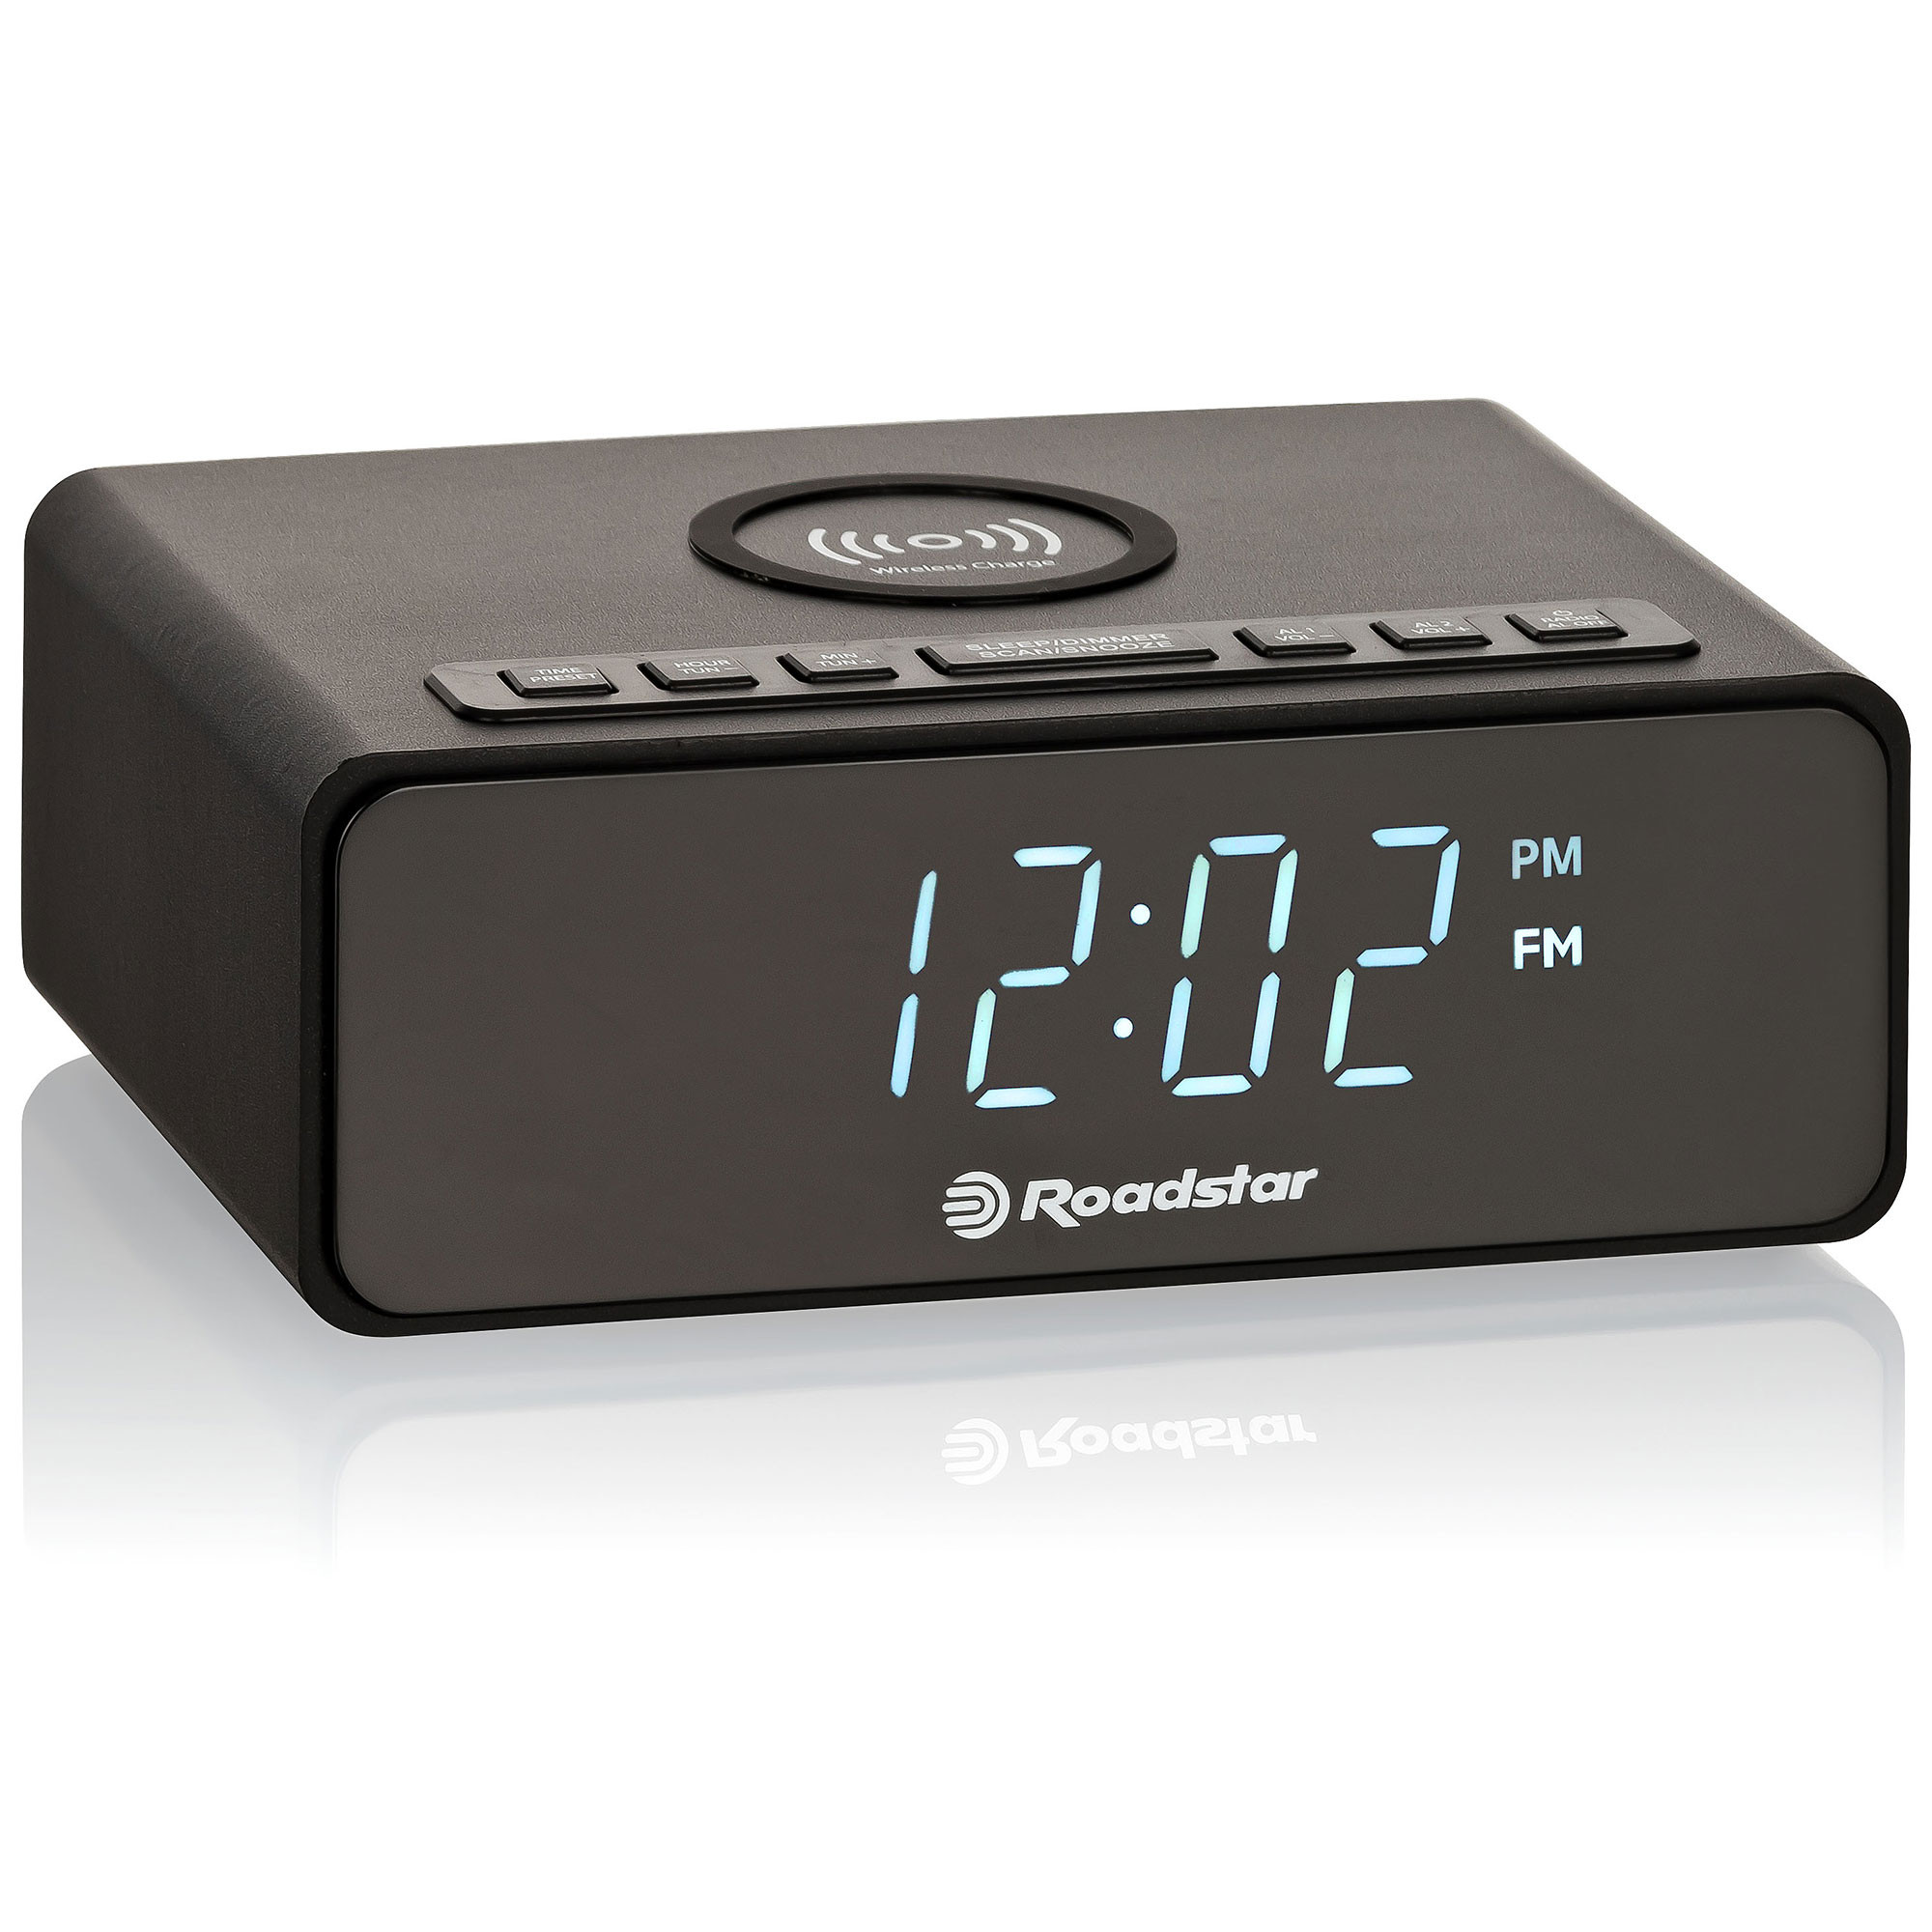 Despertador Cargador Inalámbrico Doble Alarma Función De Siesta